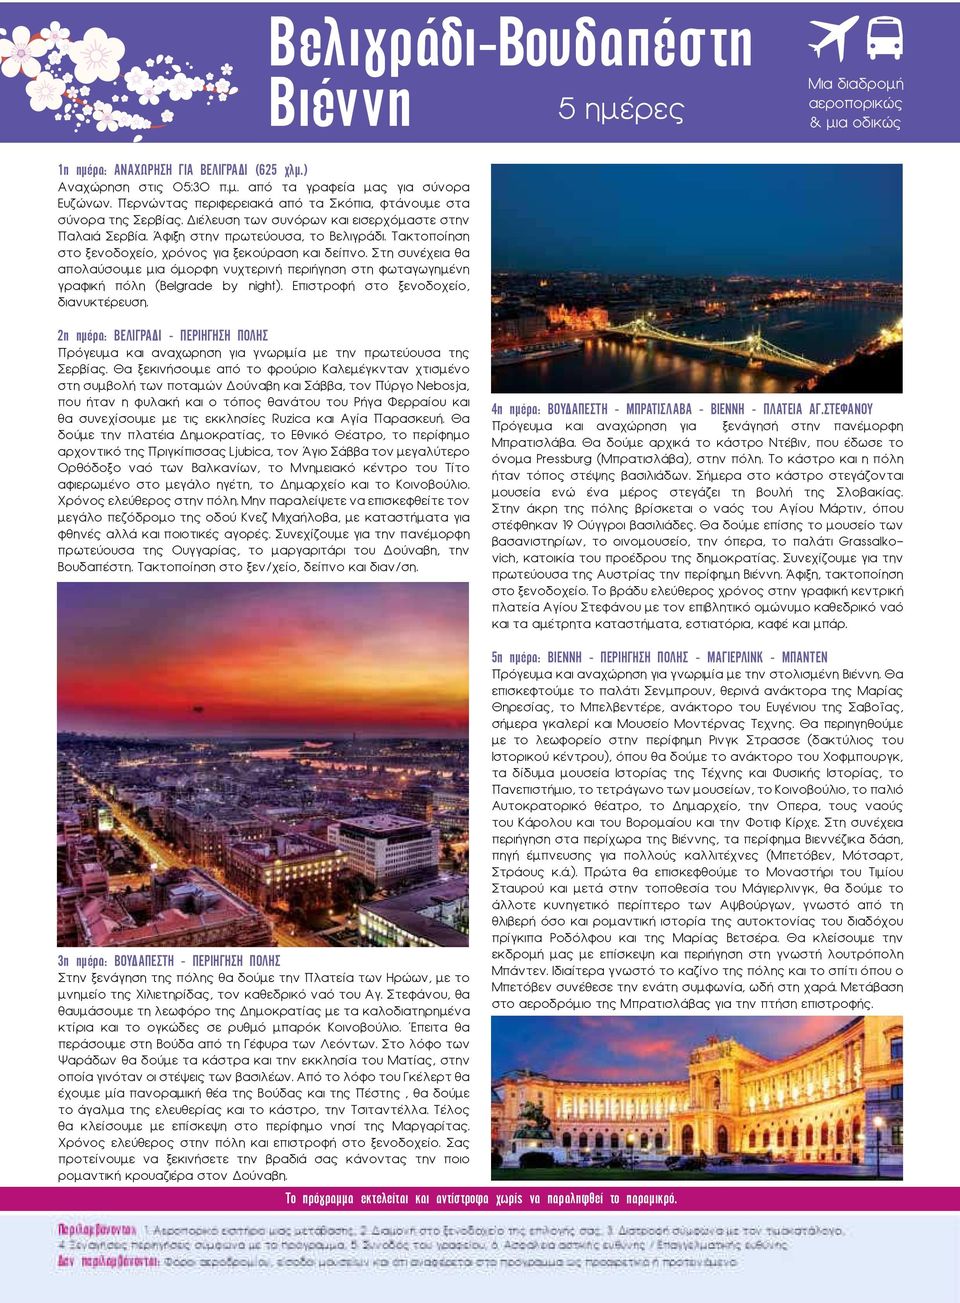 Τακτοποίηση στο ξενοδοχείο, χρόνος για ξεκούραση και δείπνο. Στη συνέχεια θα απολαύσουμε μια όμορφη νυχτερινή περιήγηση στη φωταγωγημένη γραφική πόλη (Belgrade by night).